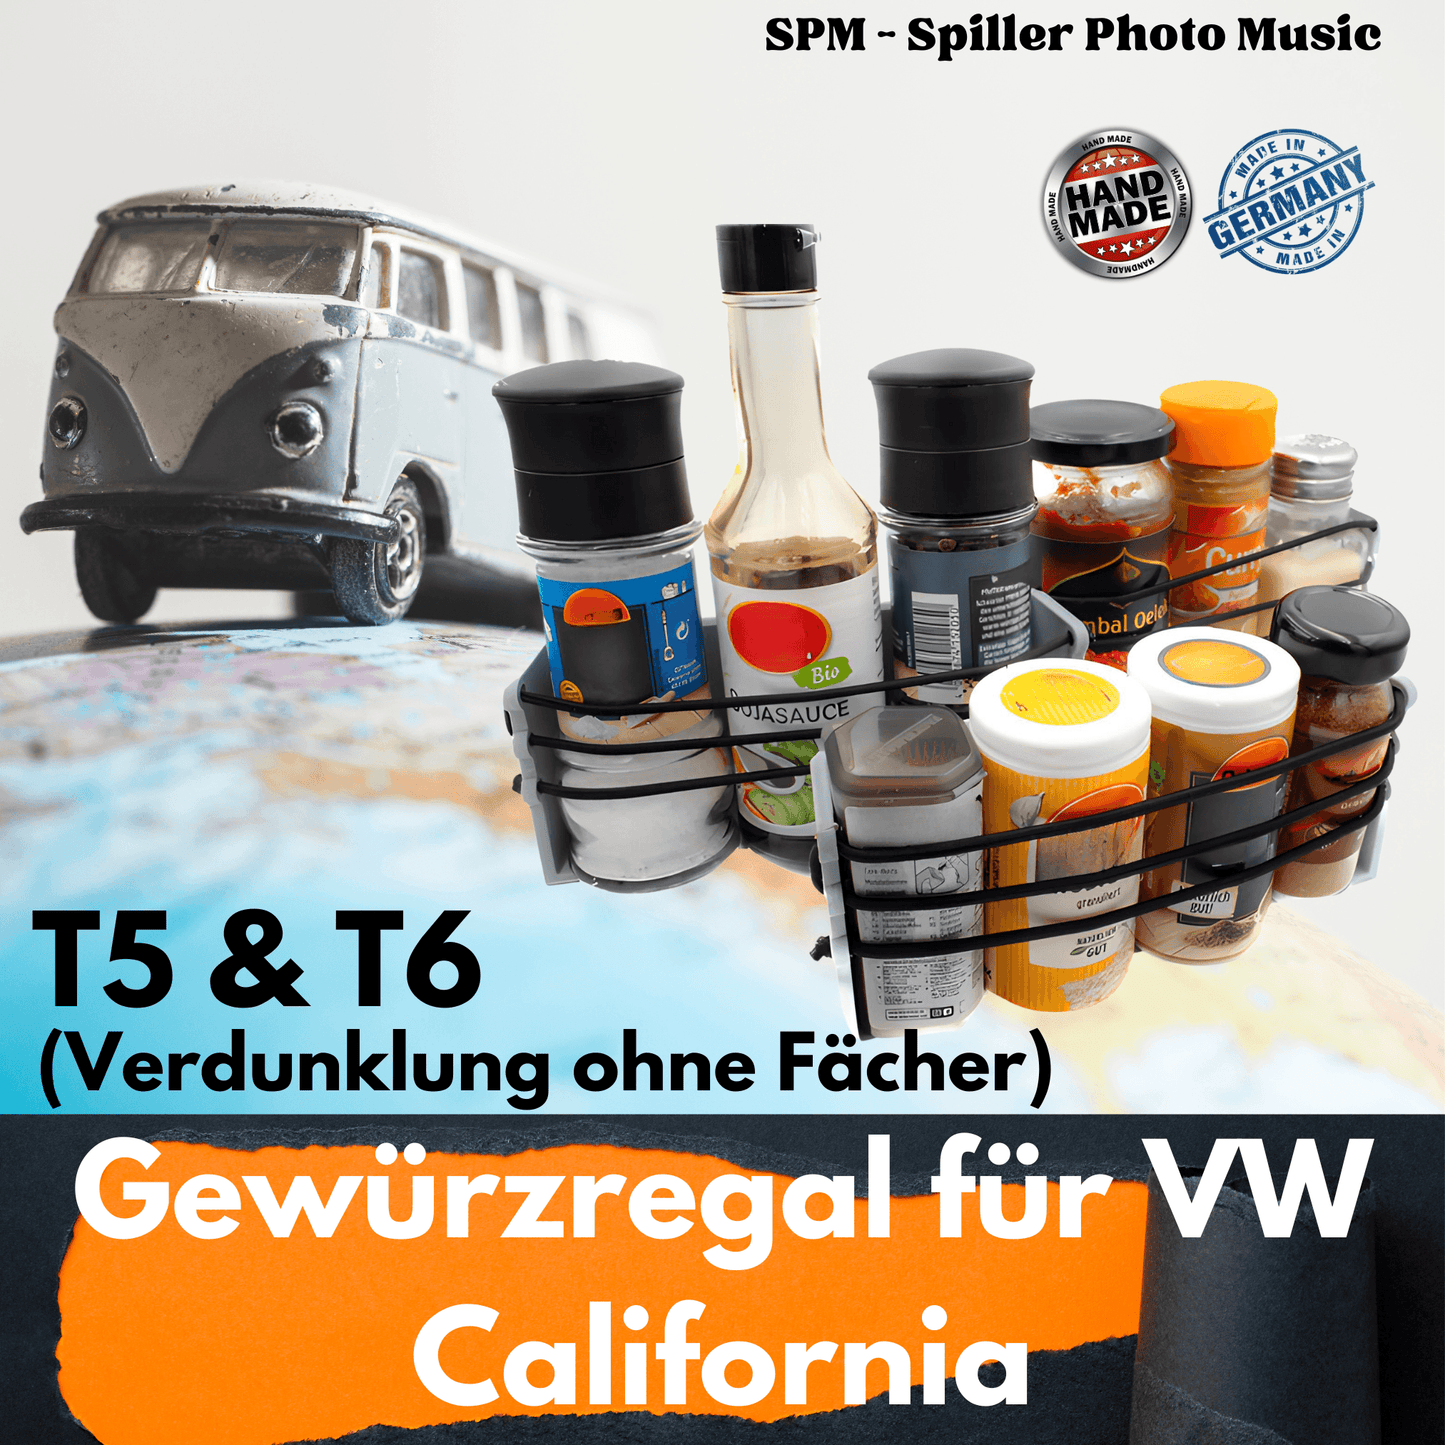 Gewürzregal für VW California Ocean, Coast, Comfort Line T5, T5.1, T5.2 und T6 - SPM - Spillerphoto & Music